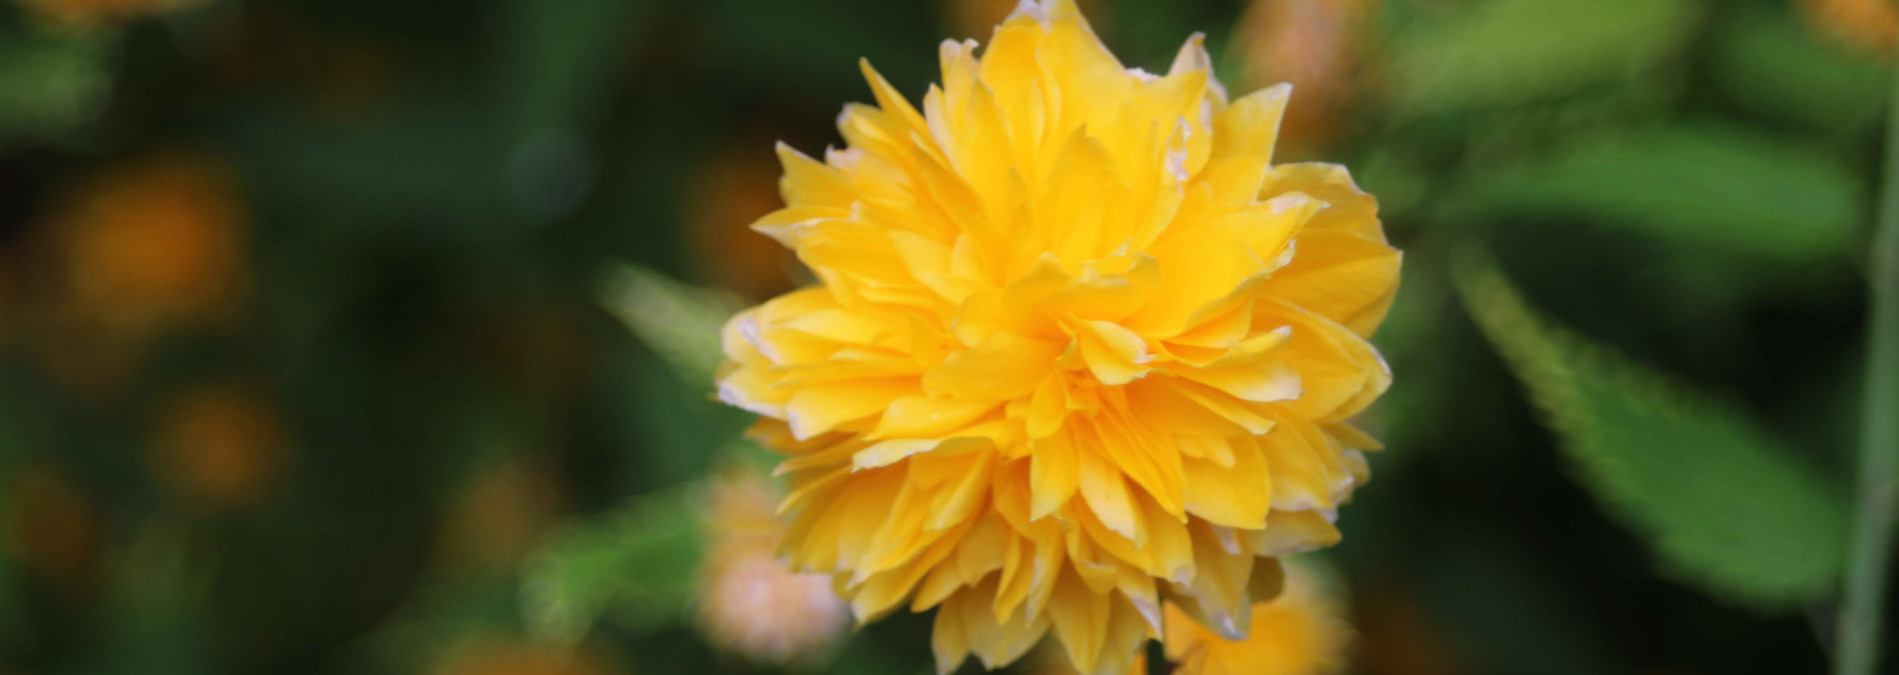 yellow-flower-slideshow-675px